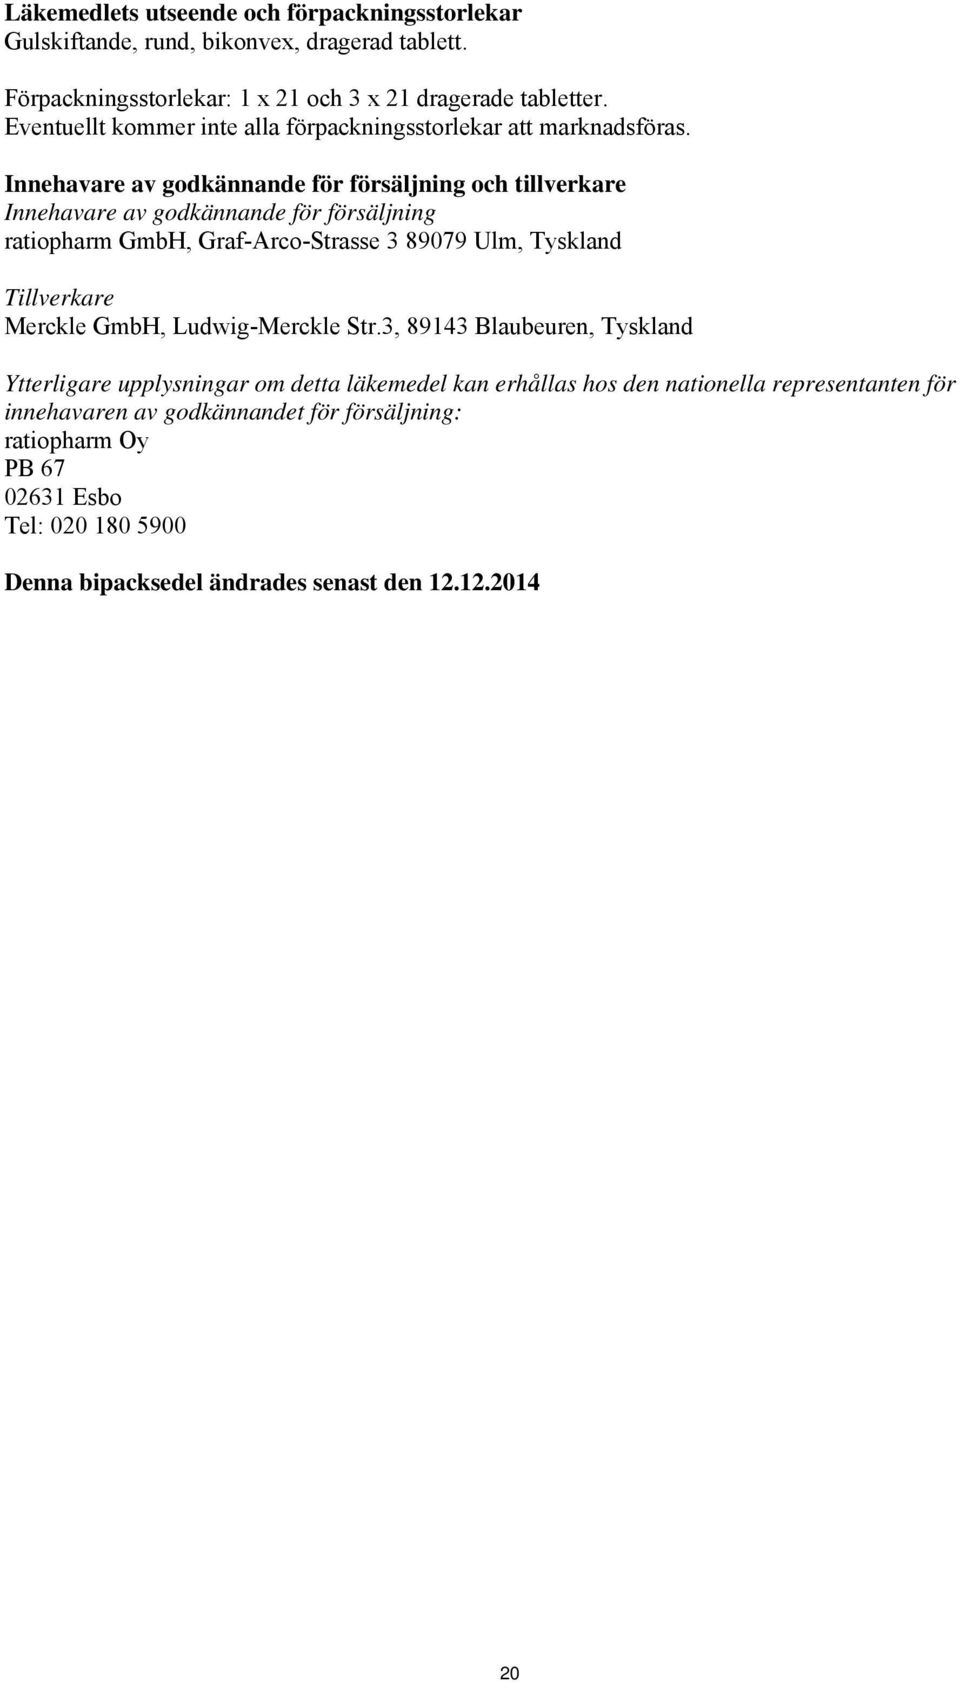 Innehavare av godkännande för försäljning och tillverkare Innehavare av godkännande för försäljning ratiopharm GmbH, Graf-Arco-Strasse 3 89079 Ulm, Tyskland Tillverkare